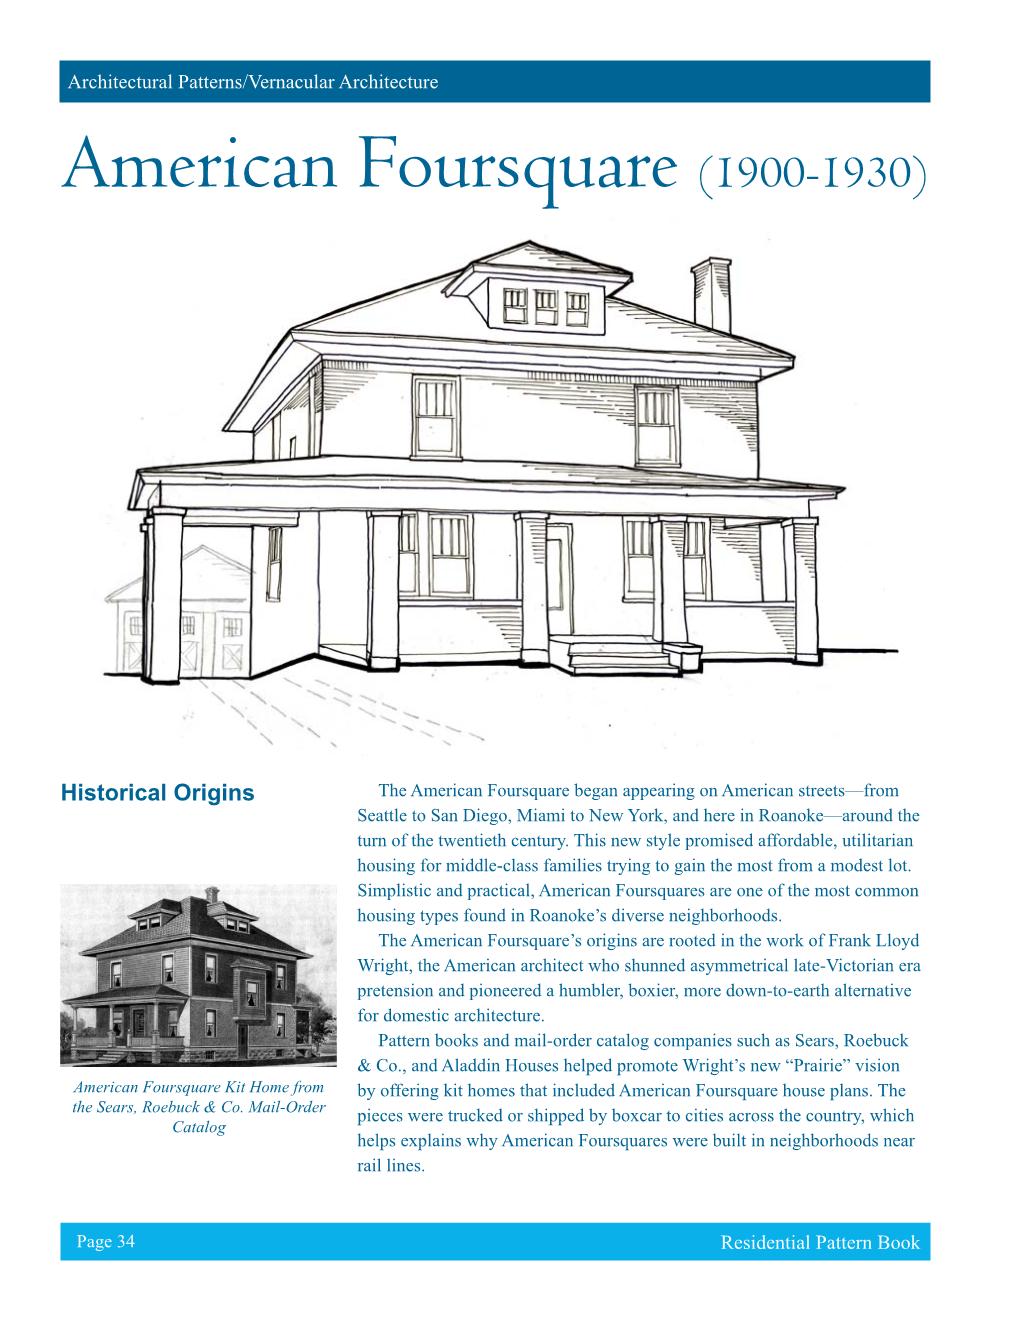 American Foursquare (1900-1930)